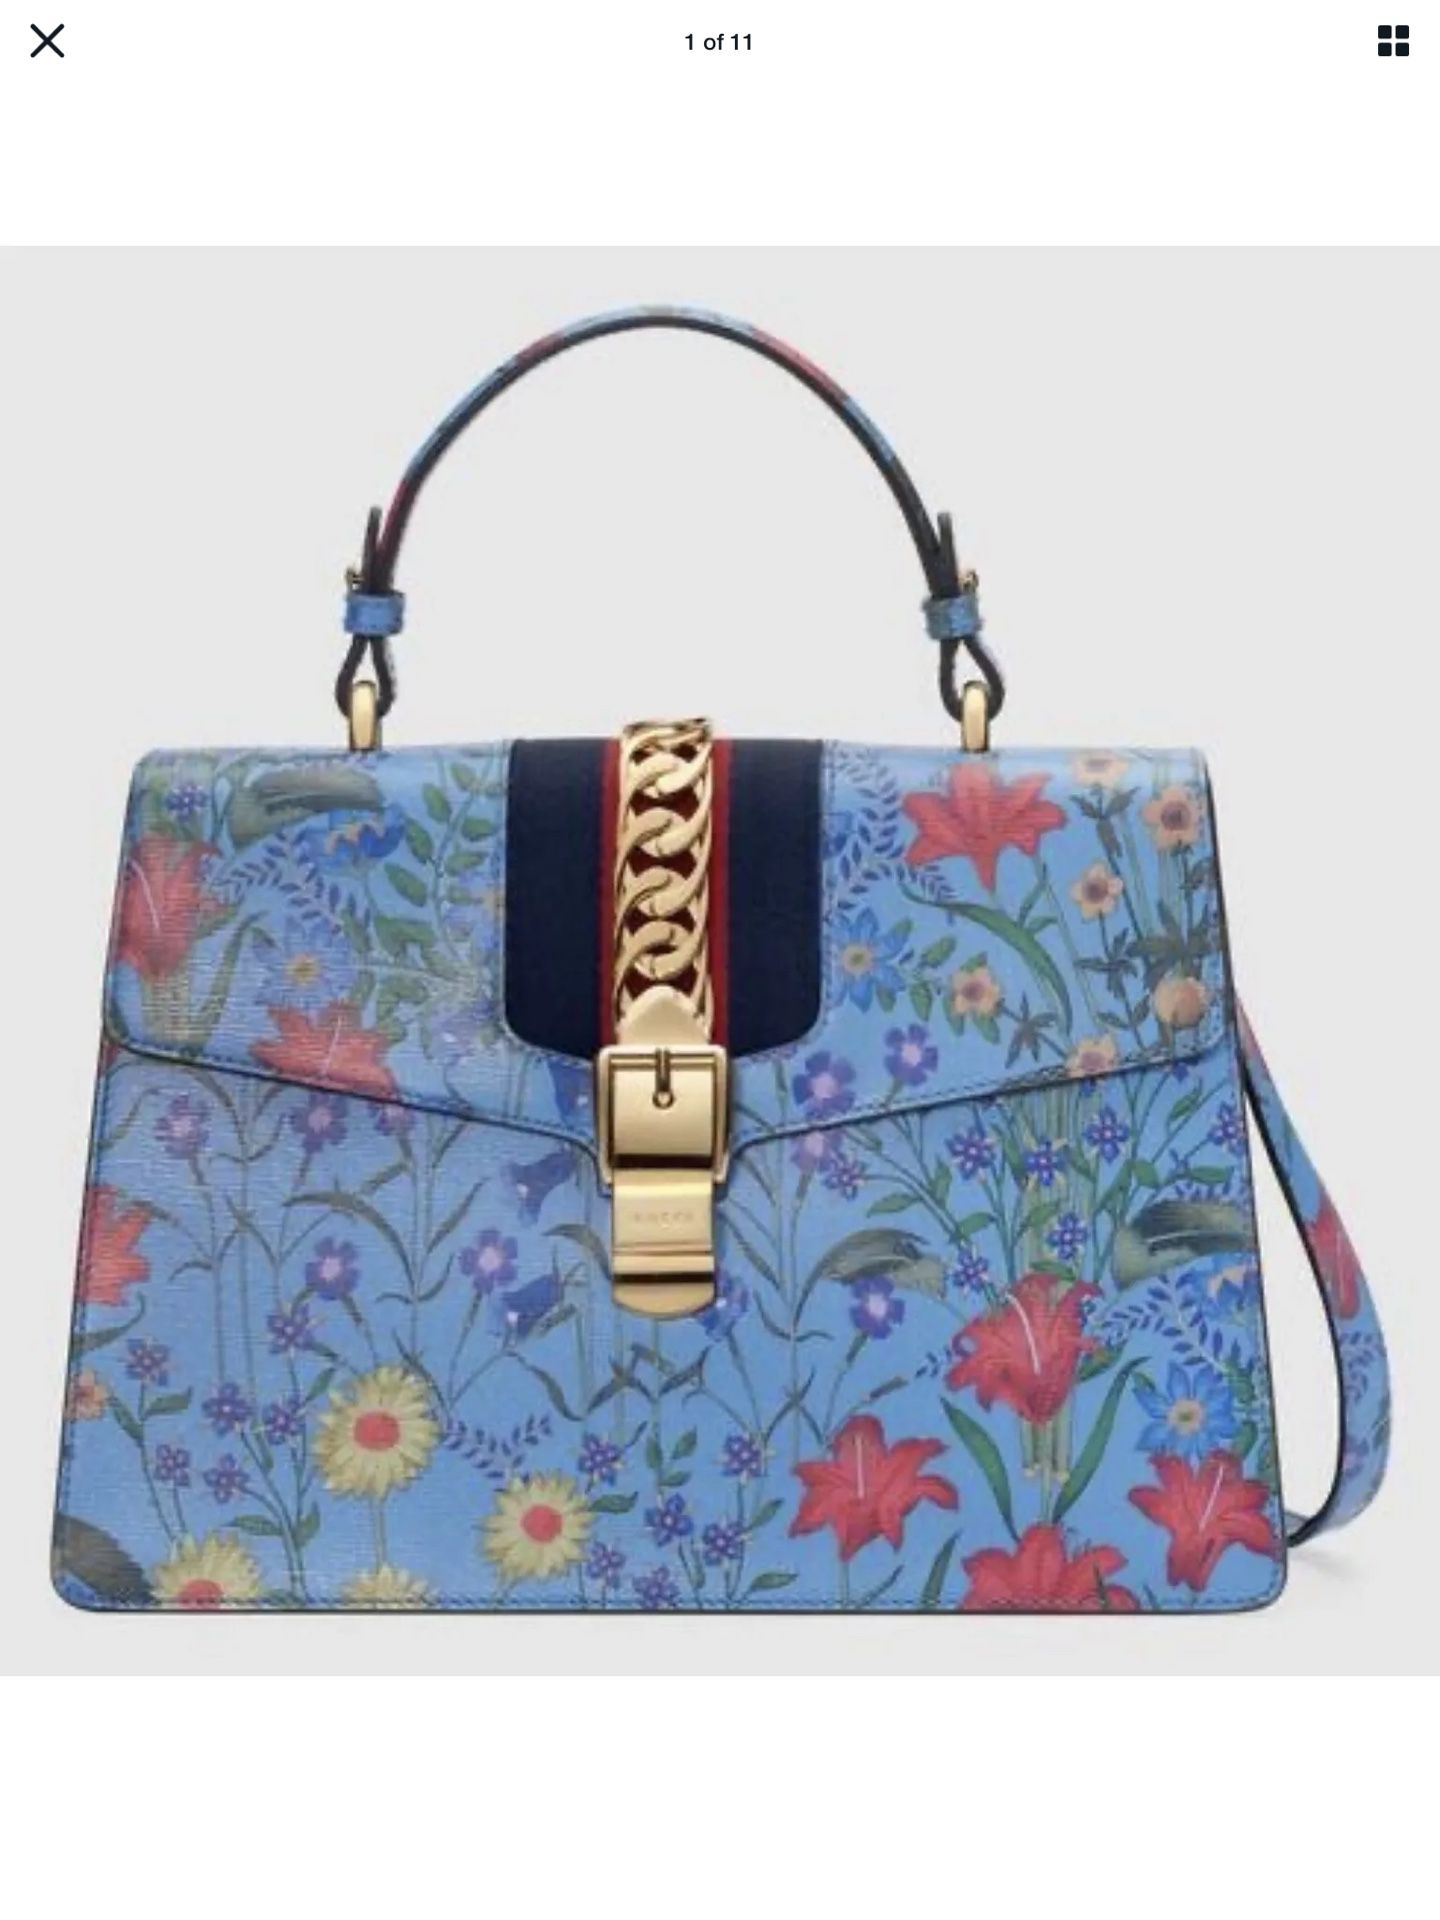 NEW Gucci Sylvie Shanghai New Flora Medium Top Handle Shoulder Bag$3850